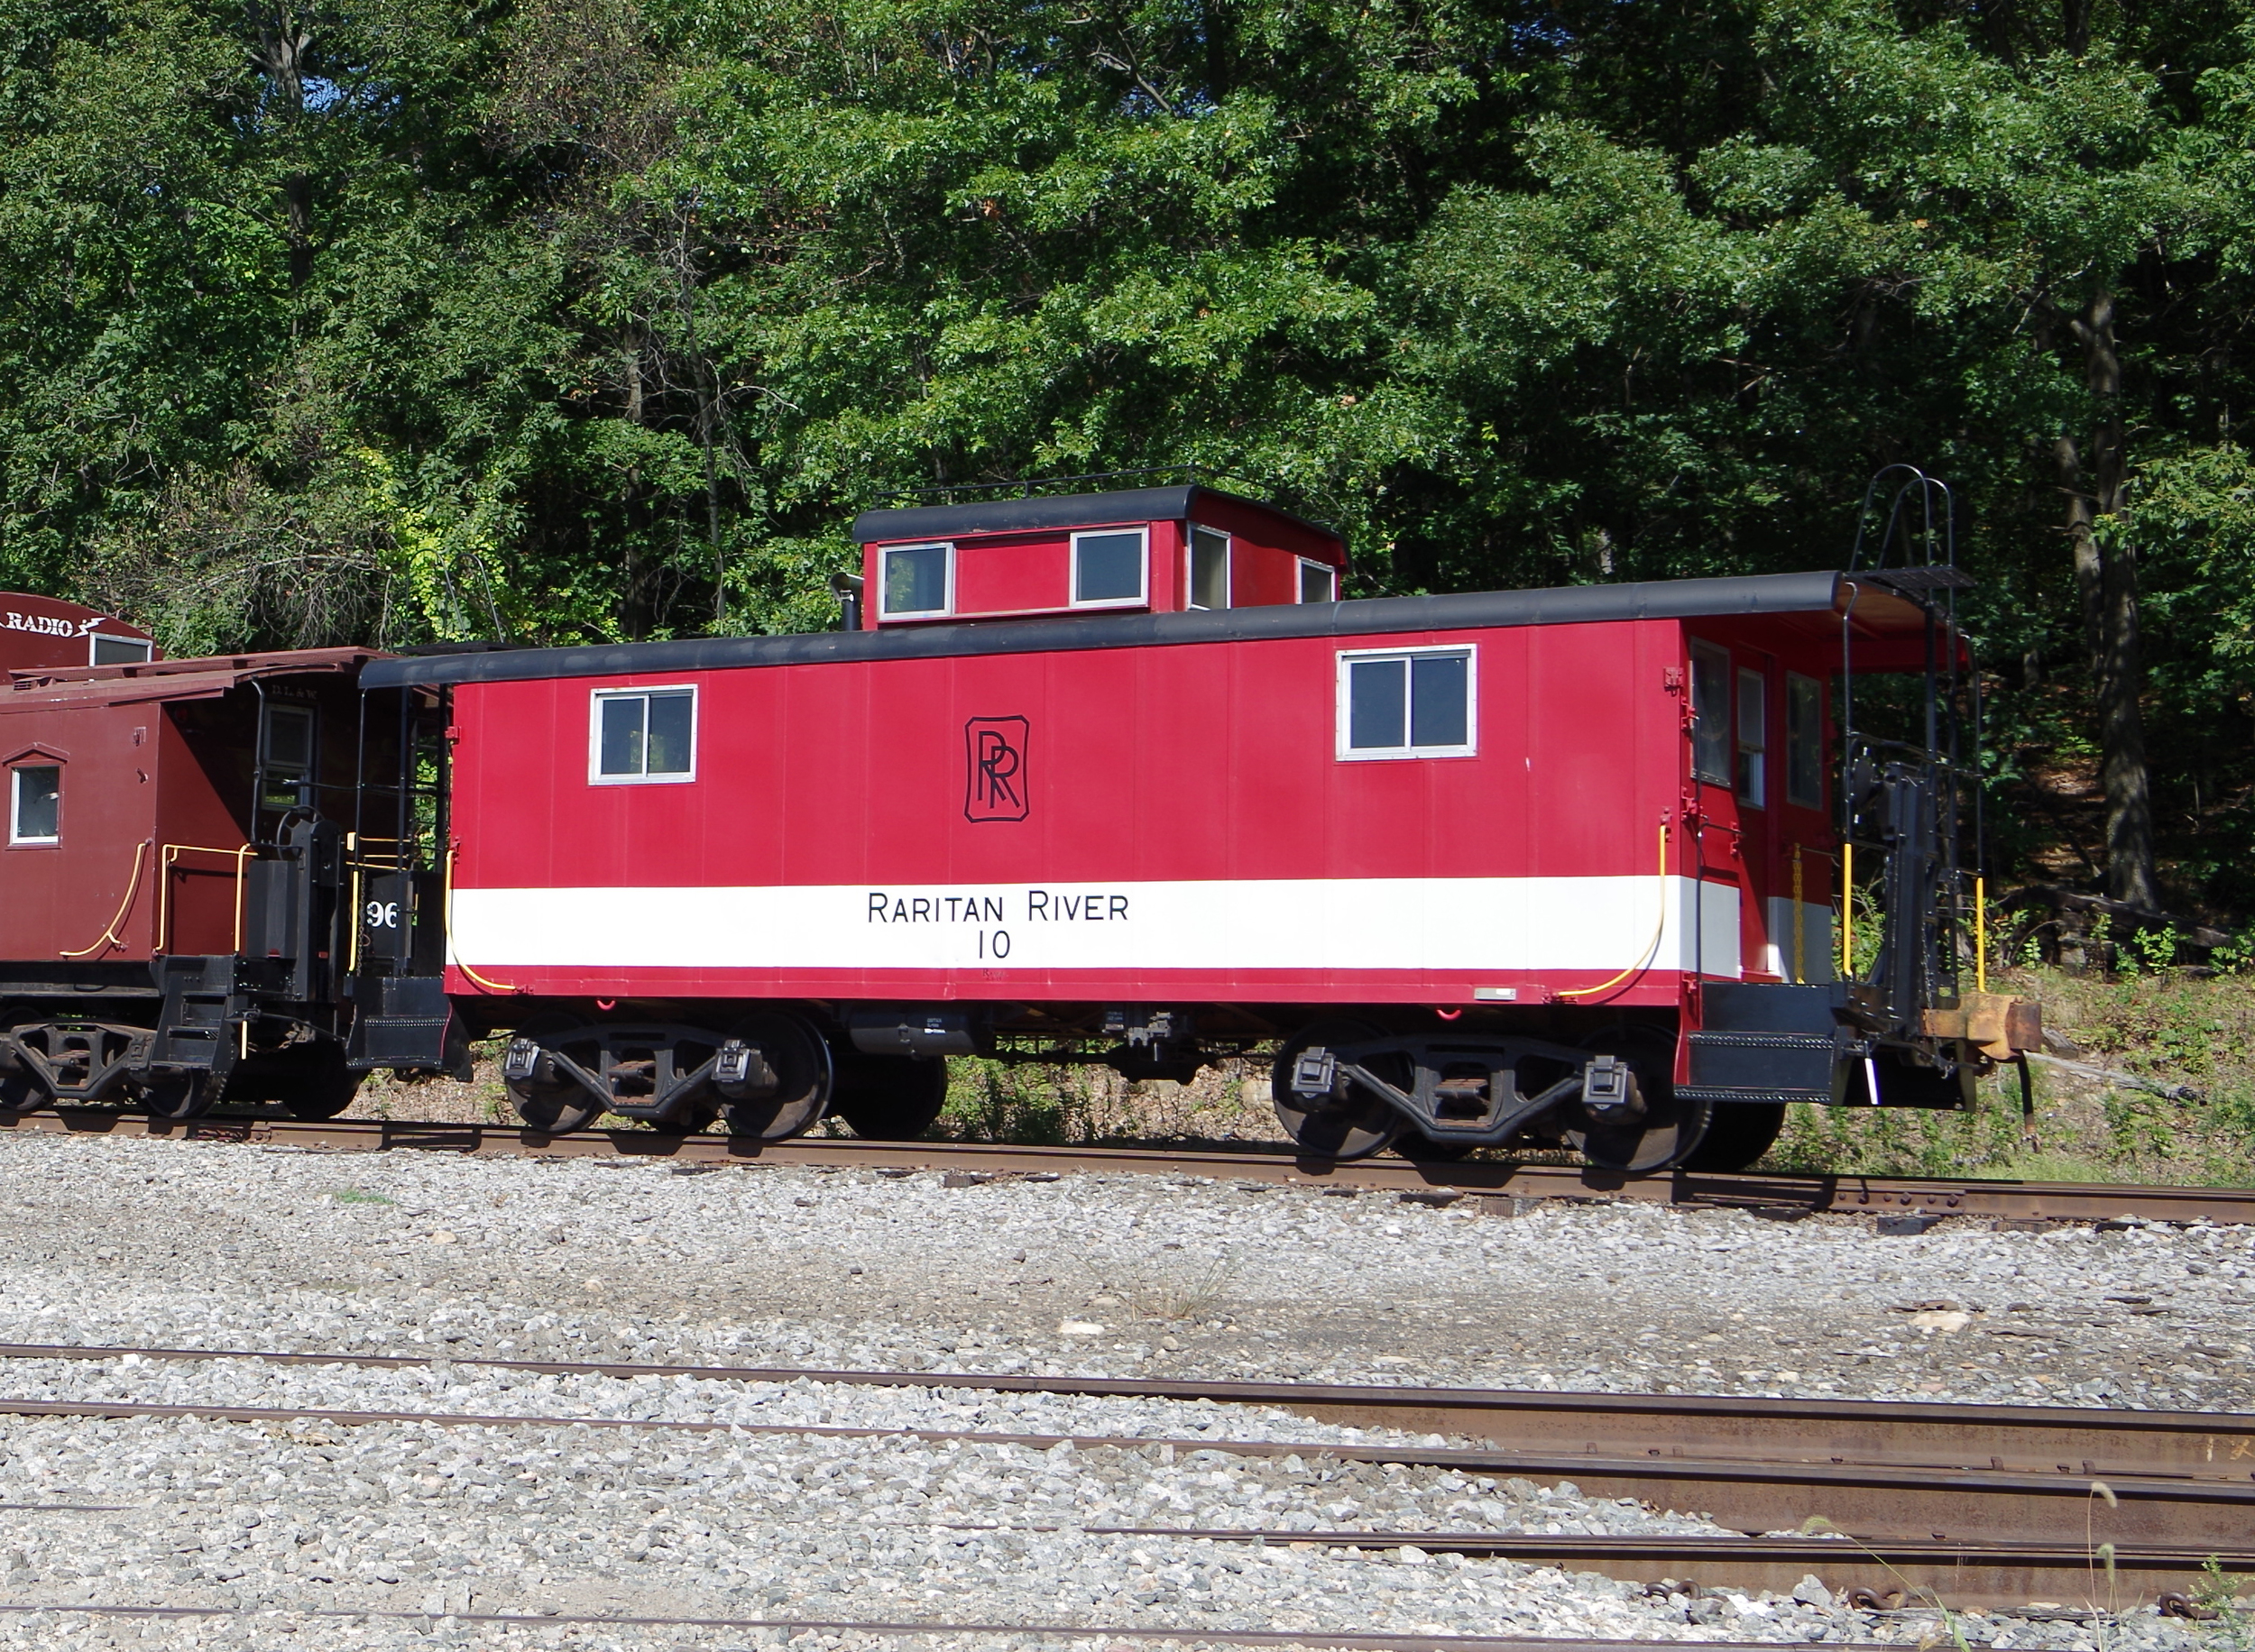 8x10 Photo NJ Caboose 7 at South Amboy RRRR Raritan River Railroad 